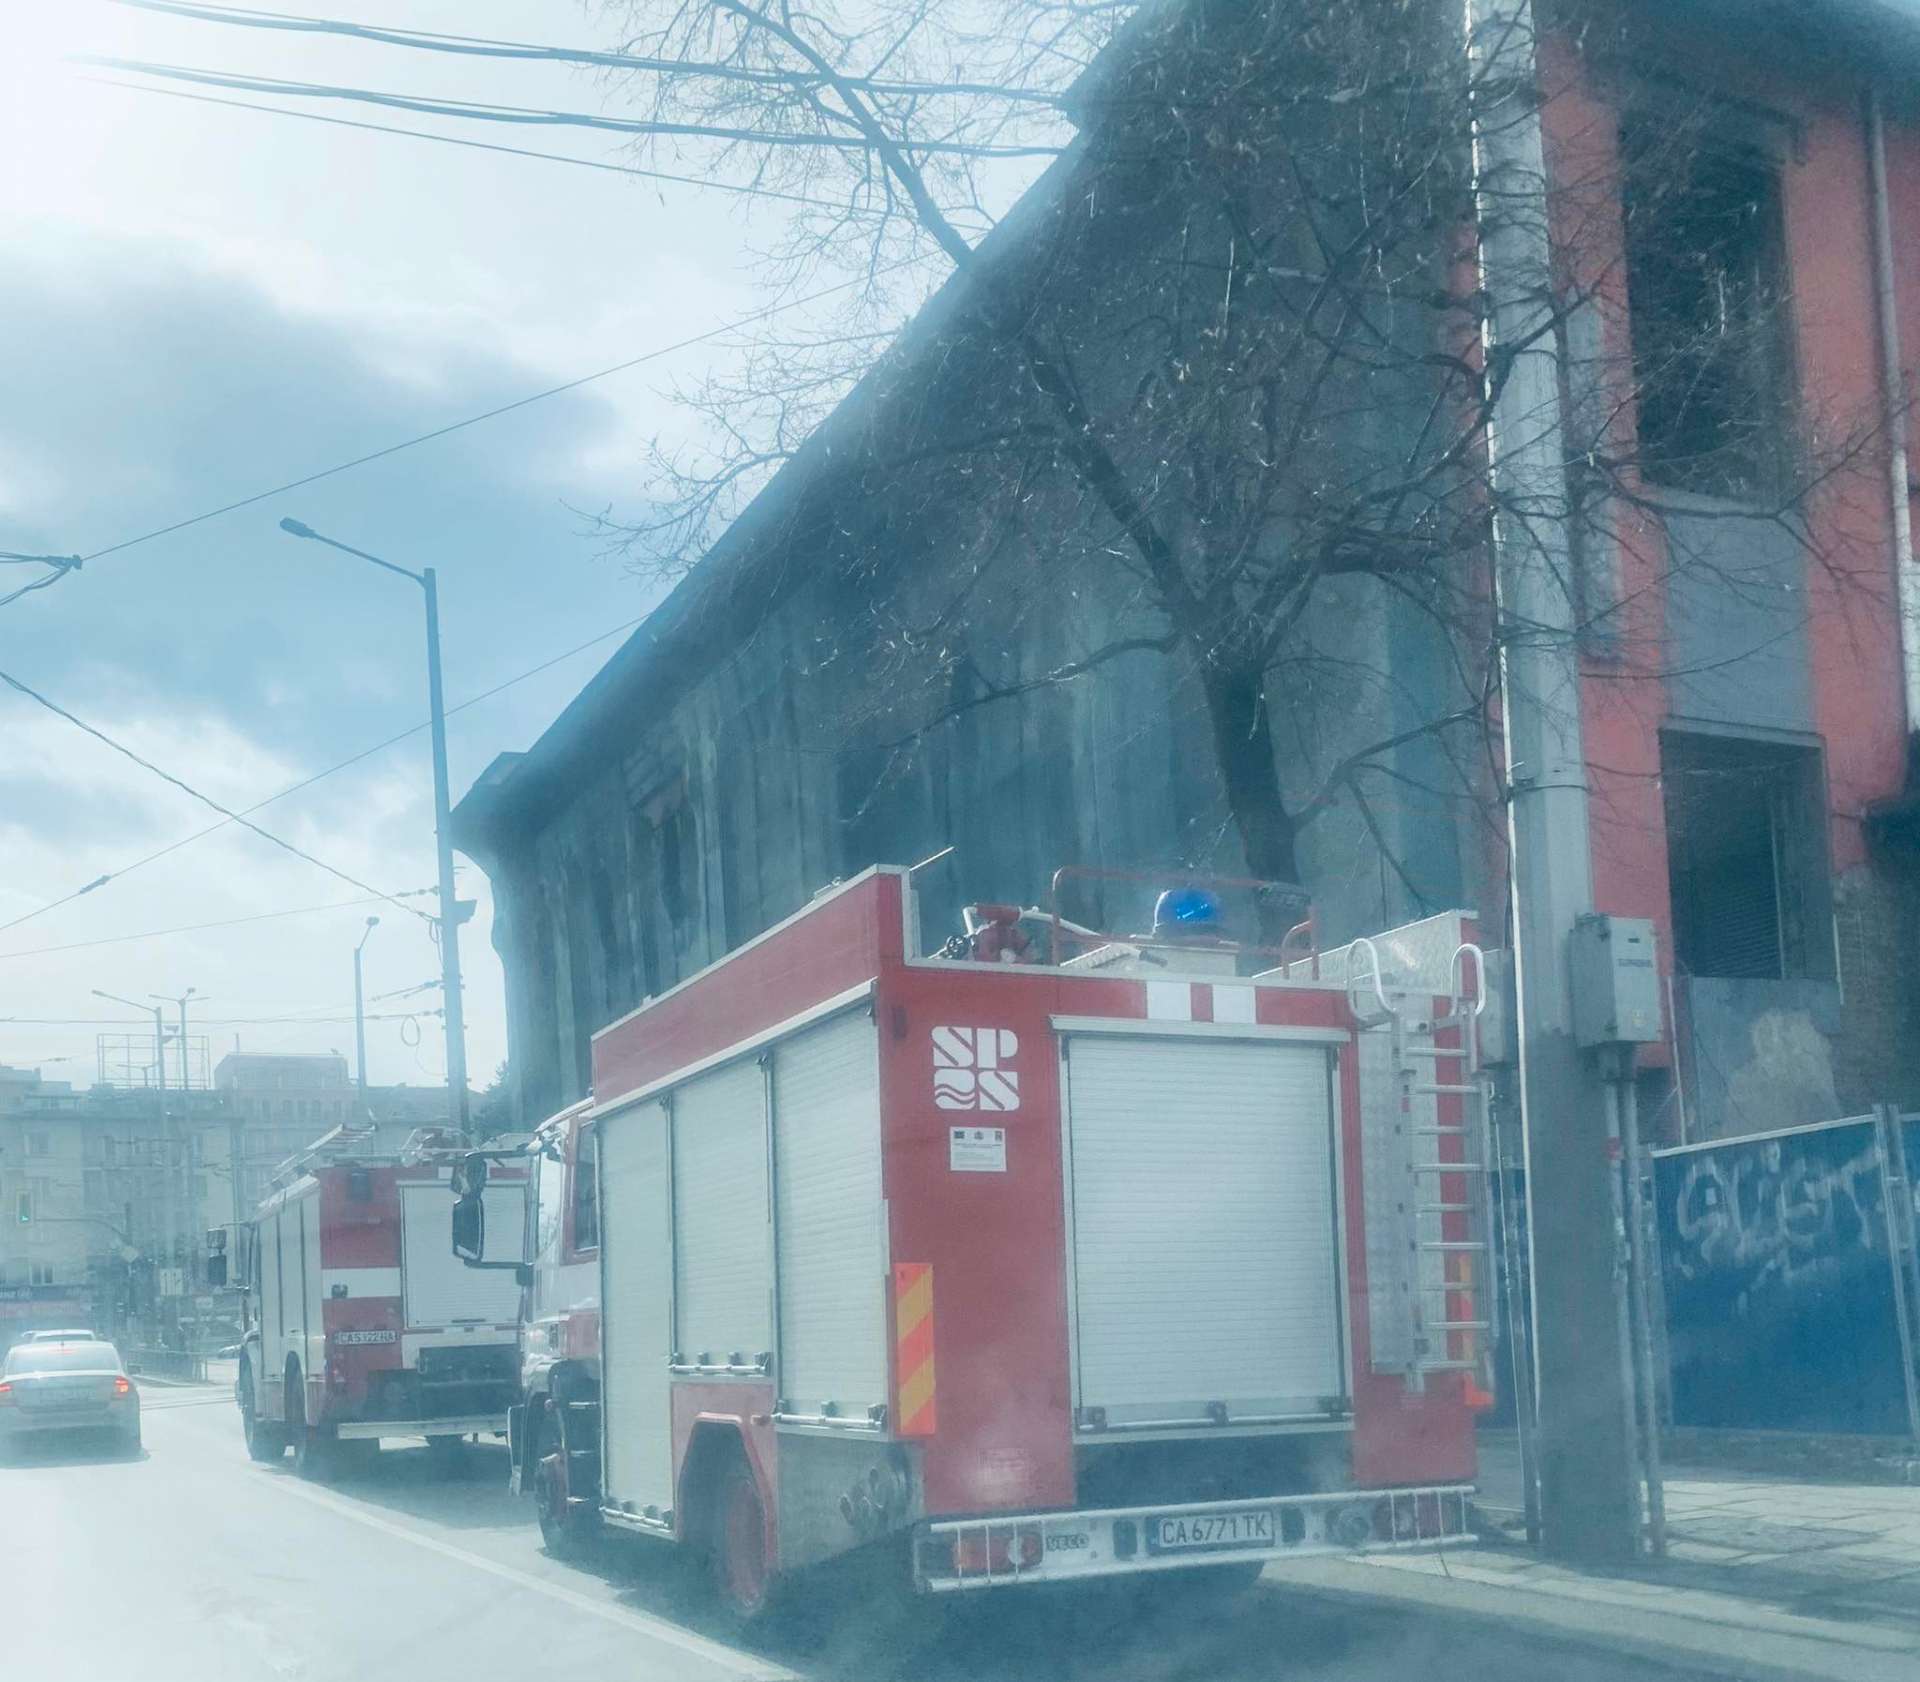 Пак извънредна ситуация в опустошения легендарен клуб "Sin City" в центъра на София СНИМКИ